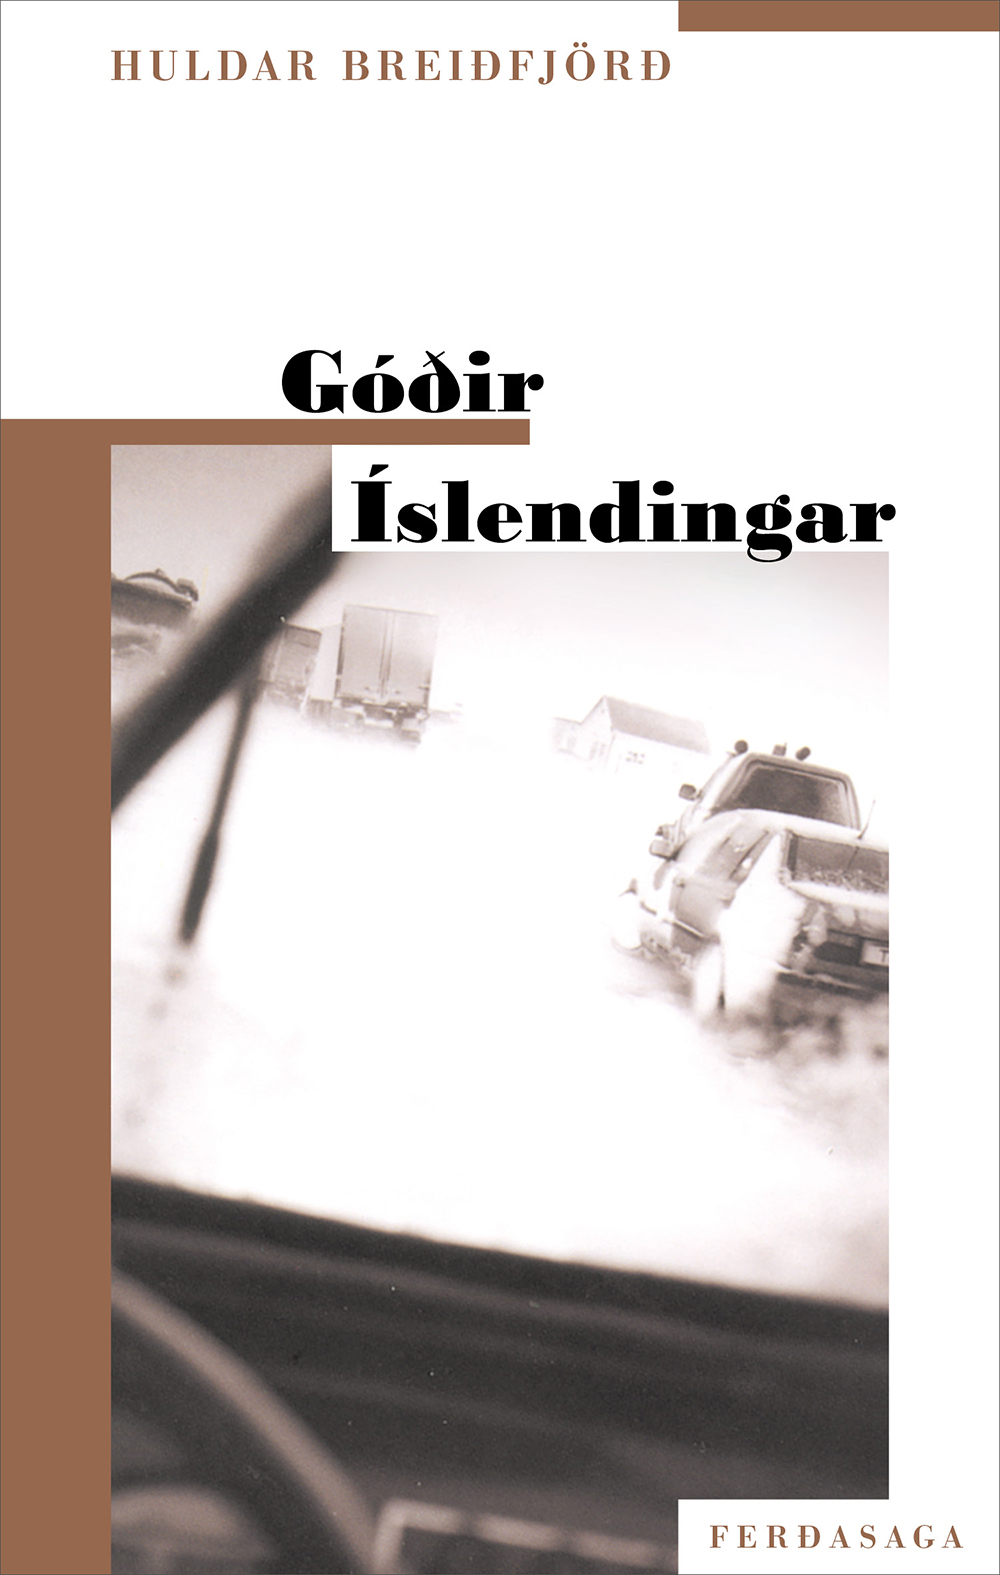 Godir_Islendigar_72